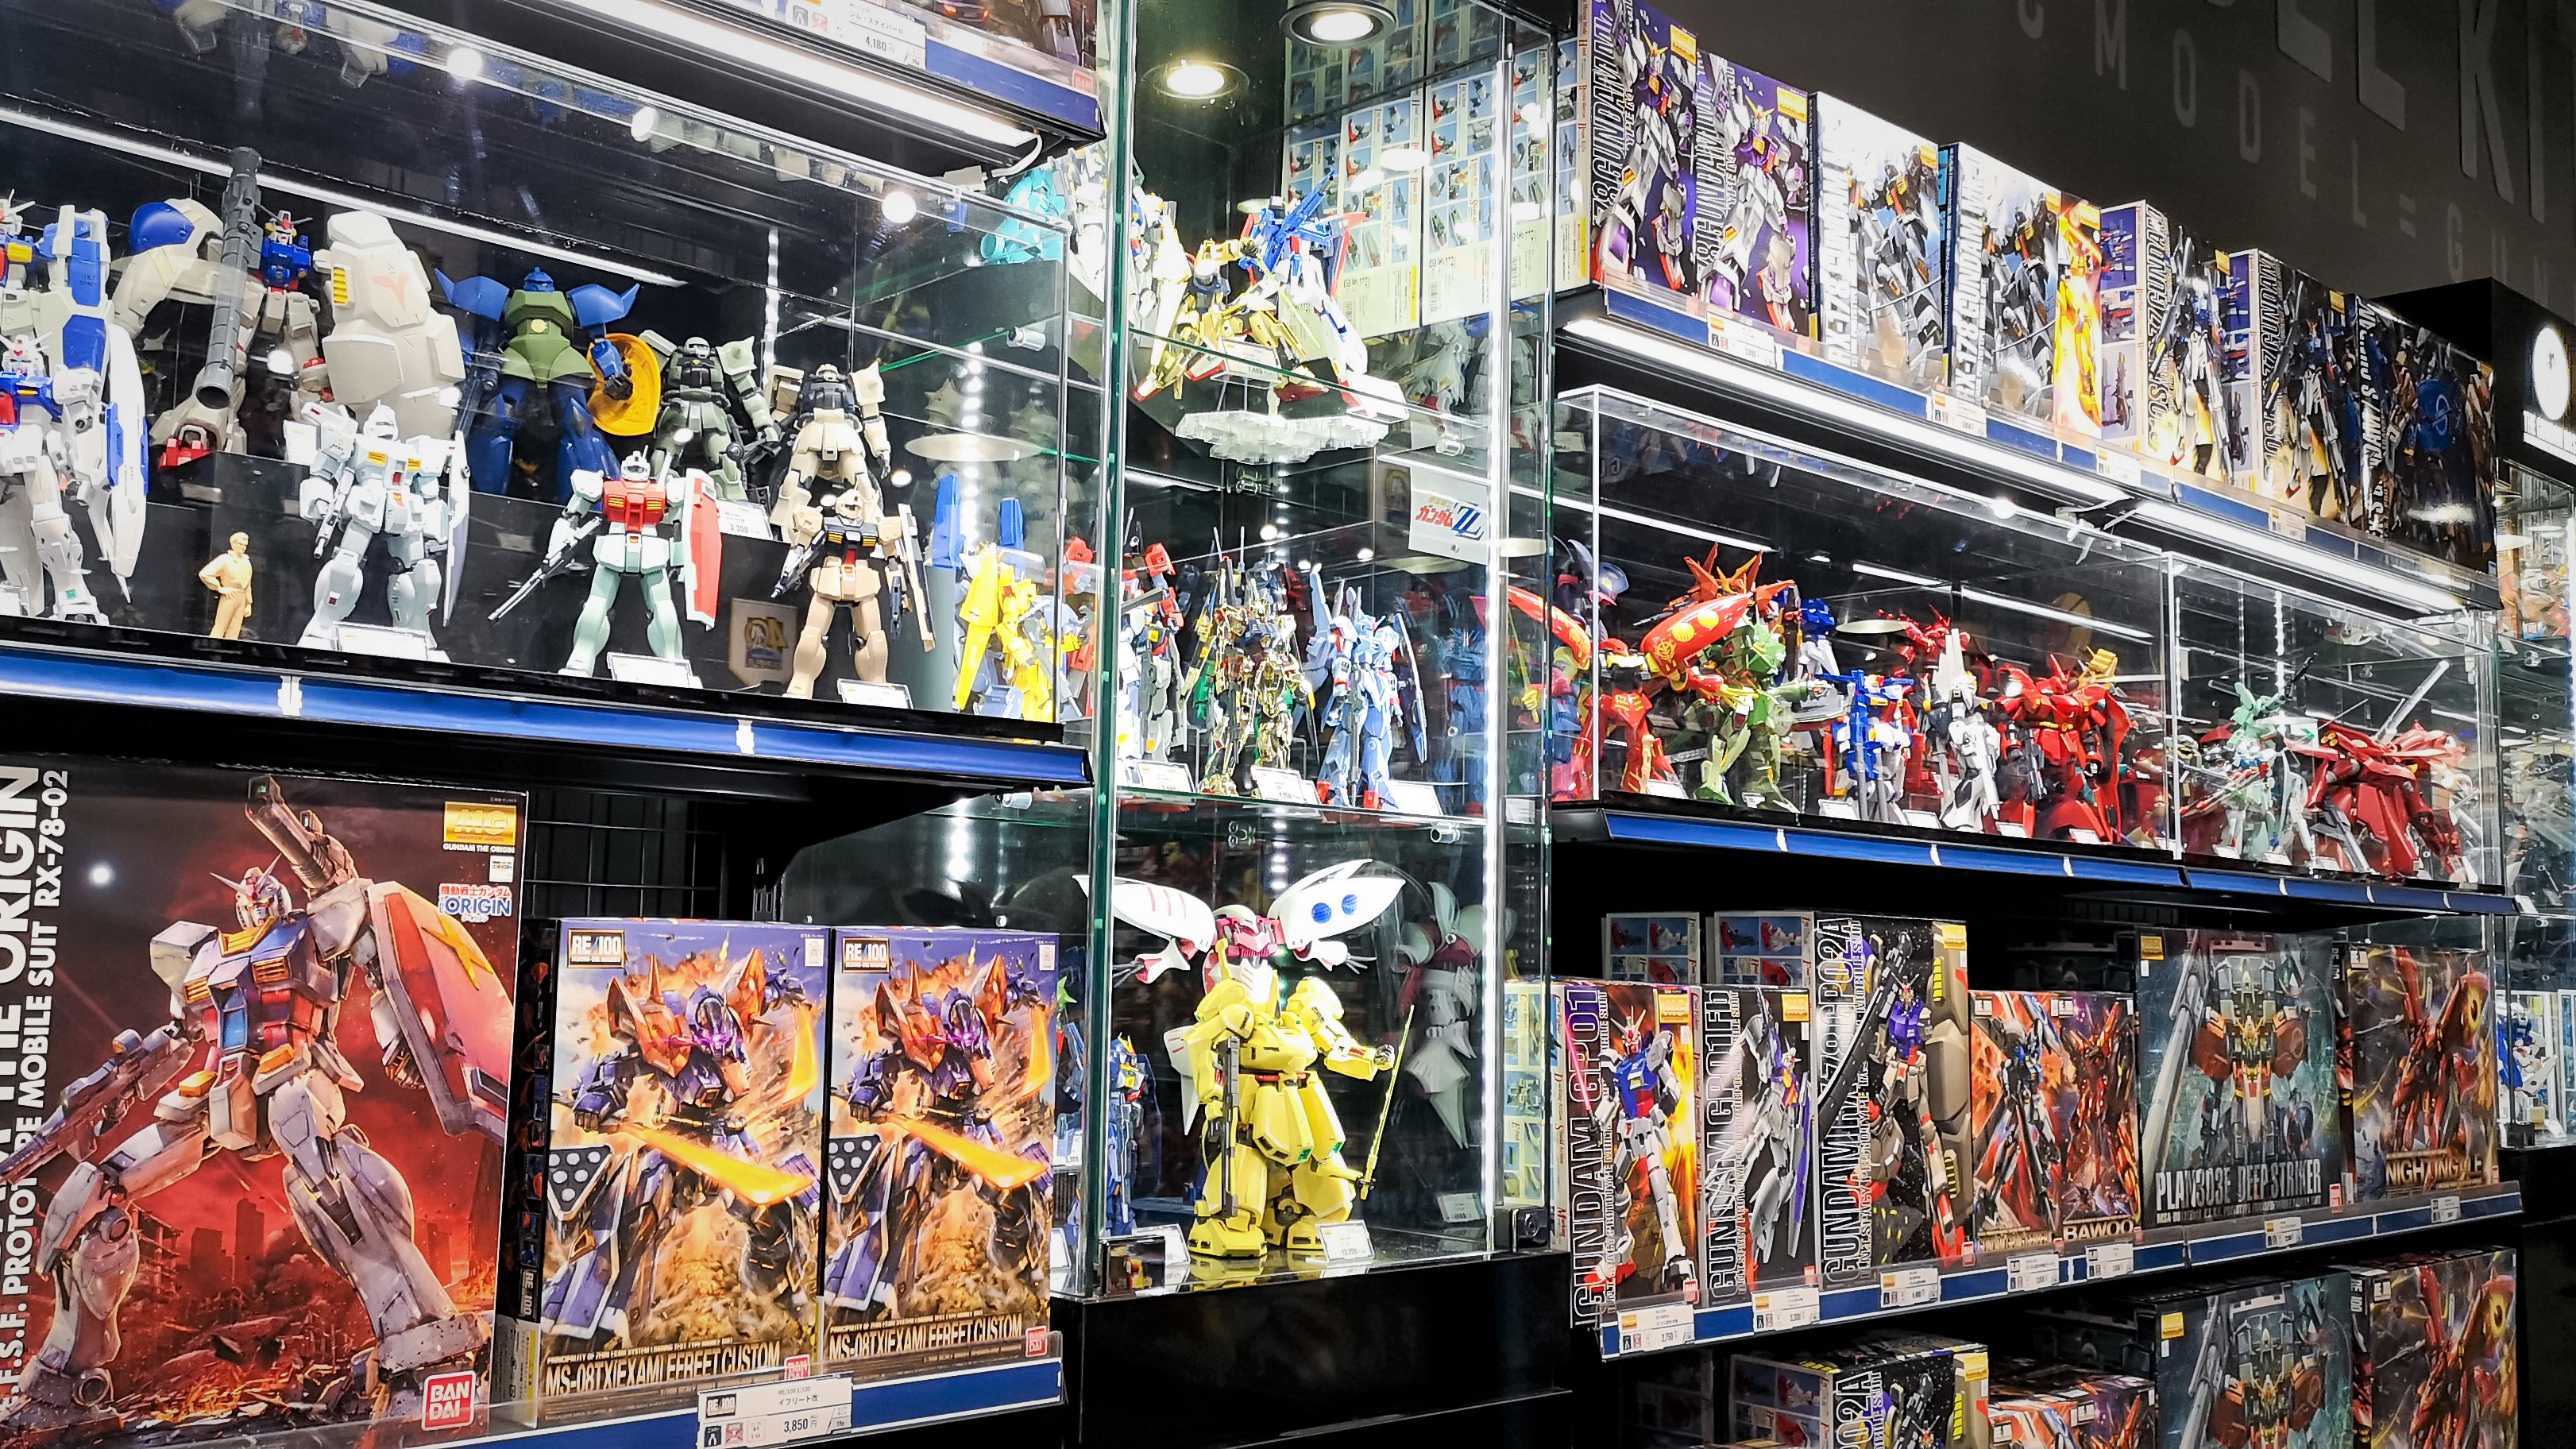 The Gundam Base 東京店情報 ガンダムベース東京は新年から様々なガンプラを取扱いしております 今回は本日の東京店店内をご紹介 限定商品の在庫情報はこちらをご確認ください T Co Ljtmx9yukj T Co 93kjbjhqvf Twitter